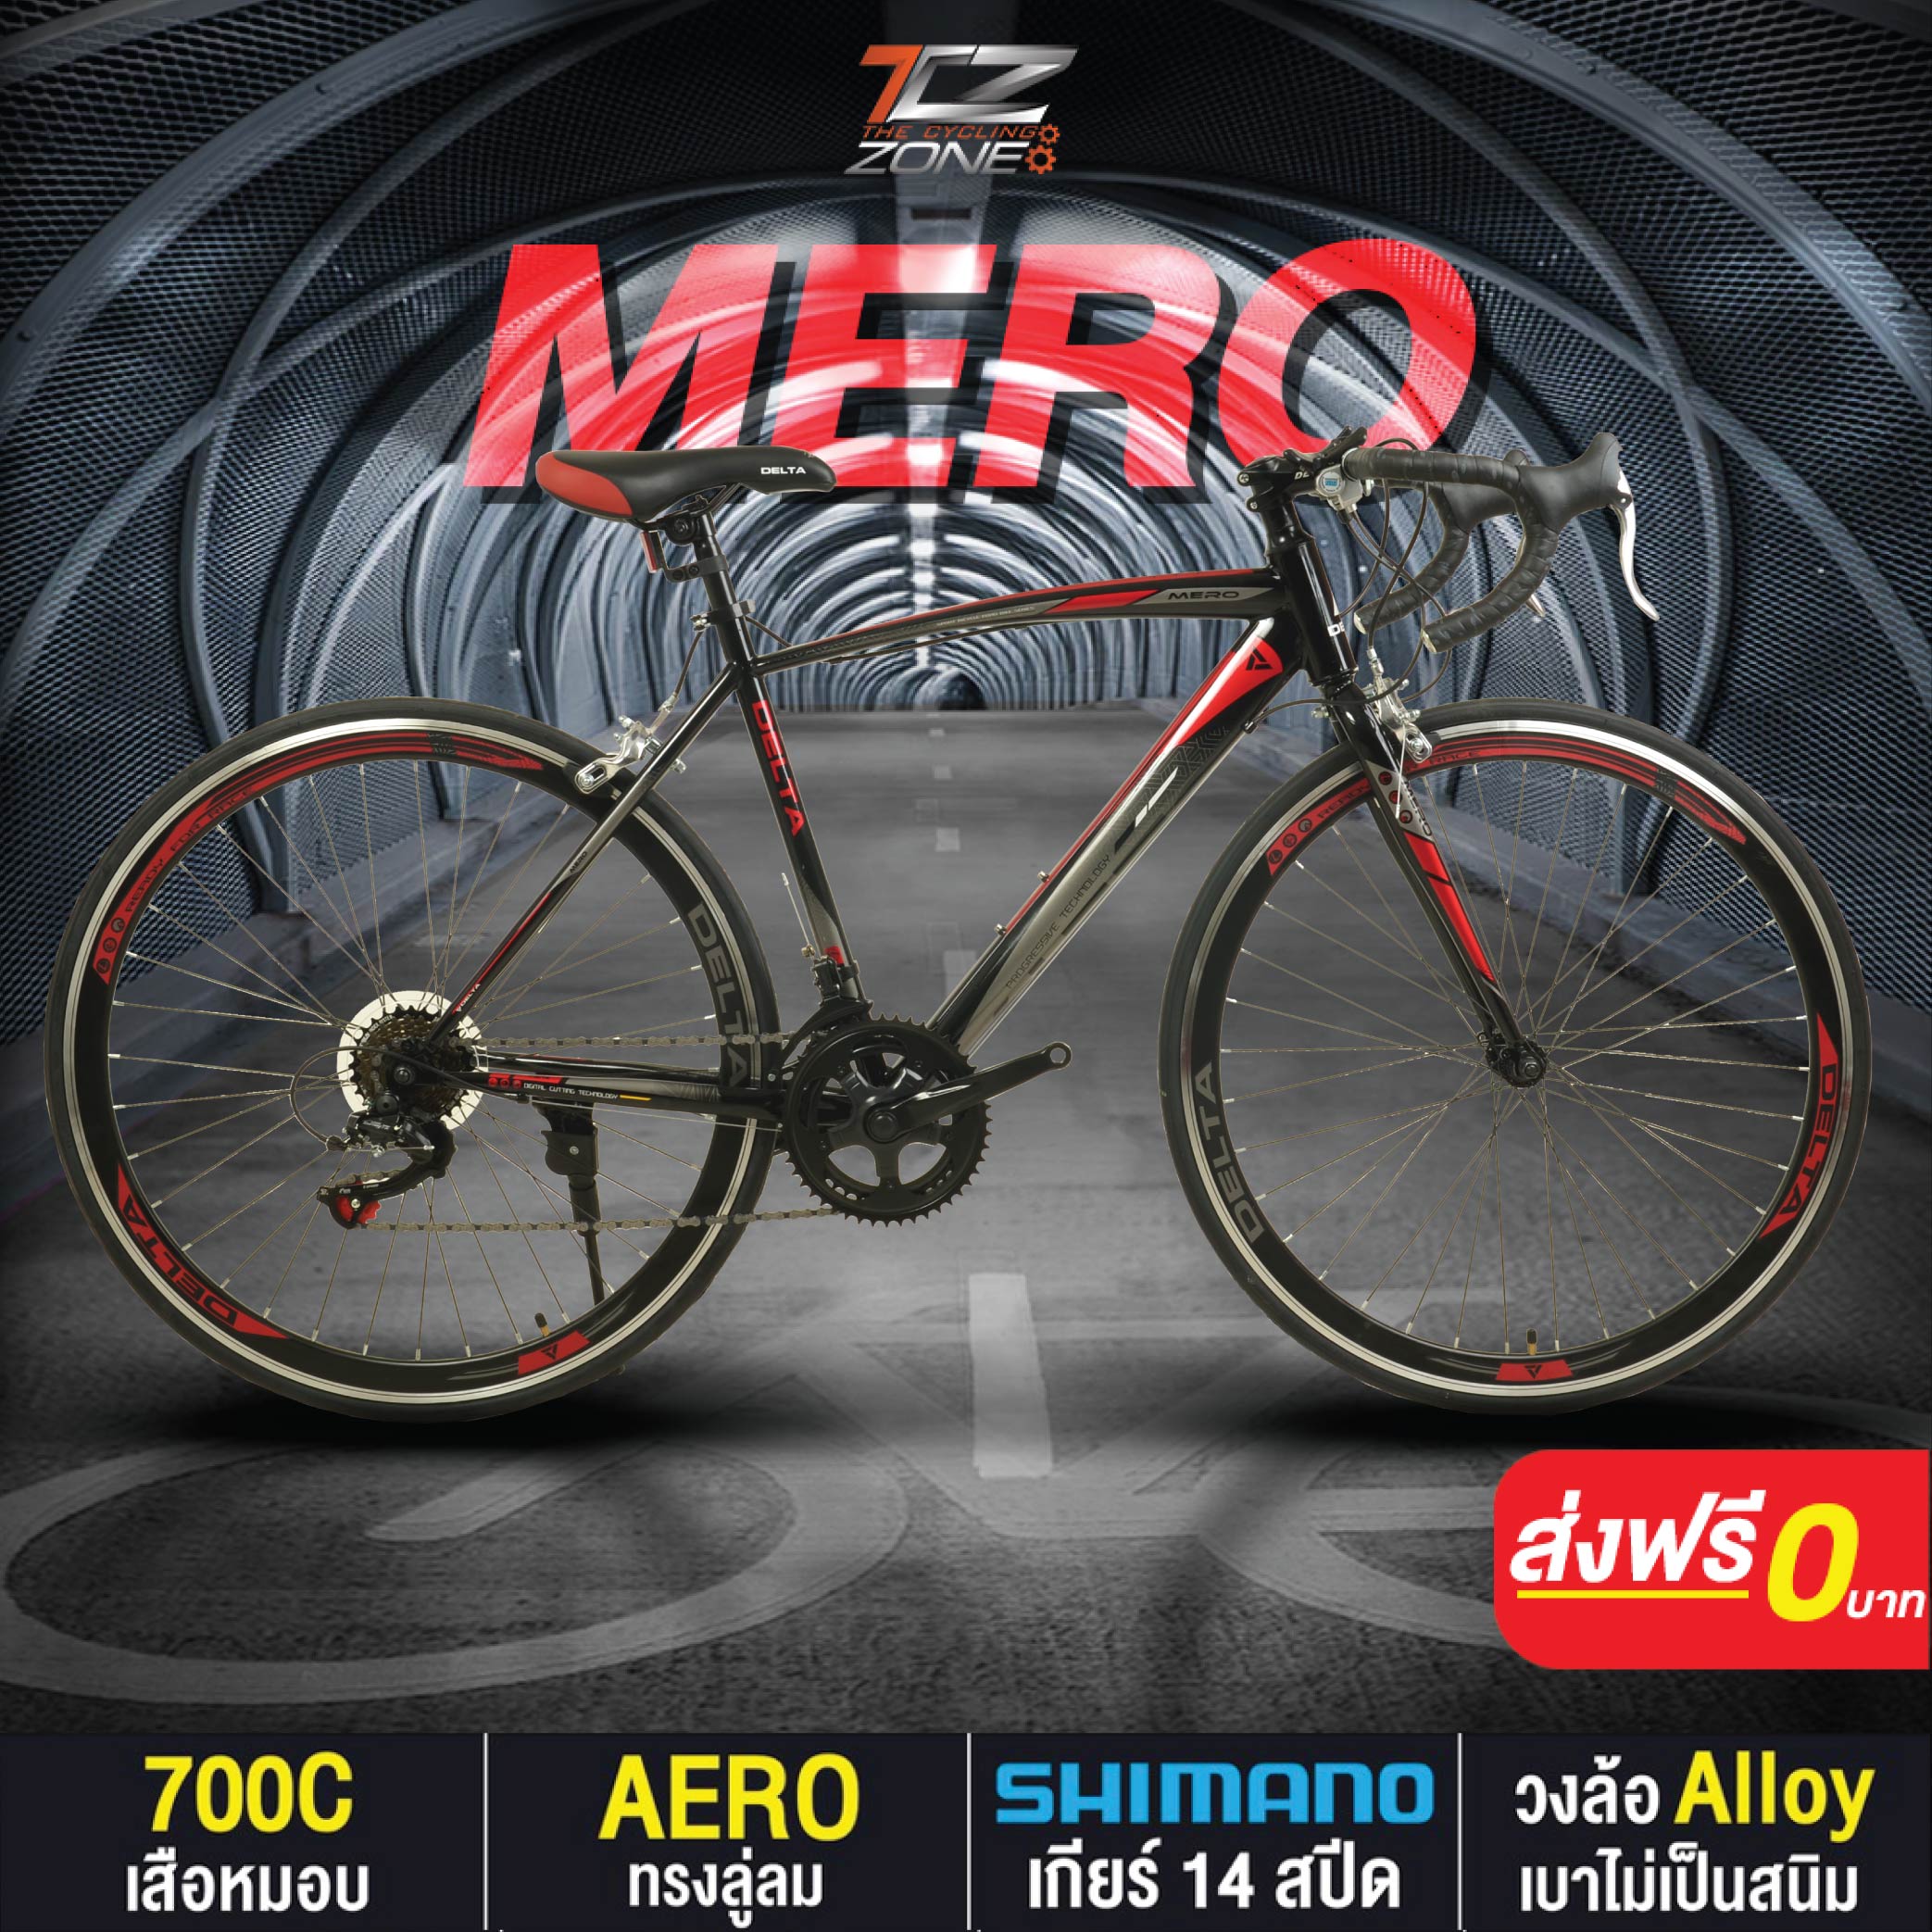 จักรยานเสือหมอบ 700C / DELTA เกียร์ SHIMANO 14 สปีด / ไซส์ 49 / รุ่น MERO สีแดง